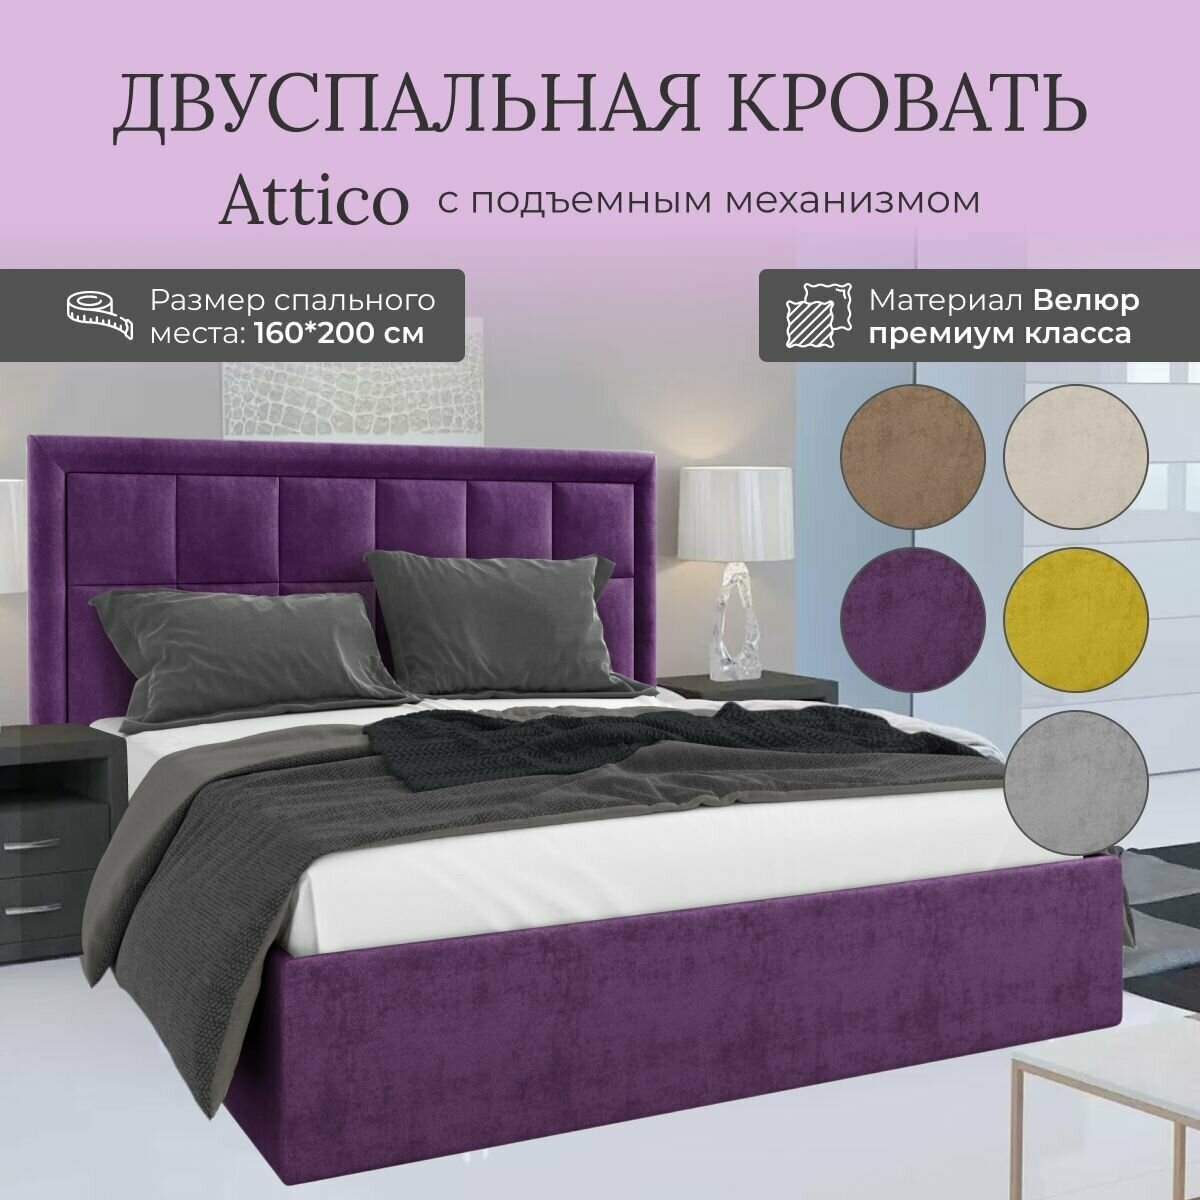 Кровать с подъемным механизмом Luxson Attico двуспальная размер 160х200